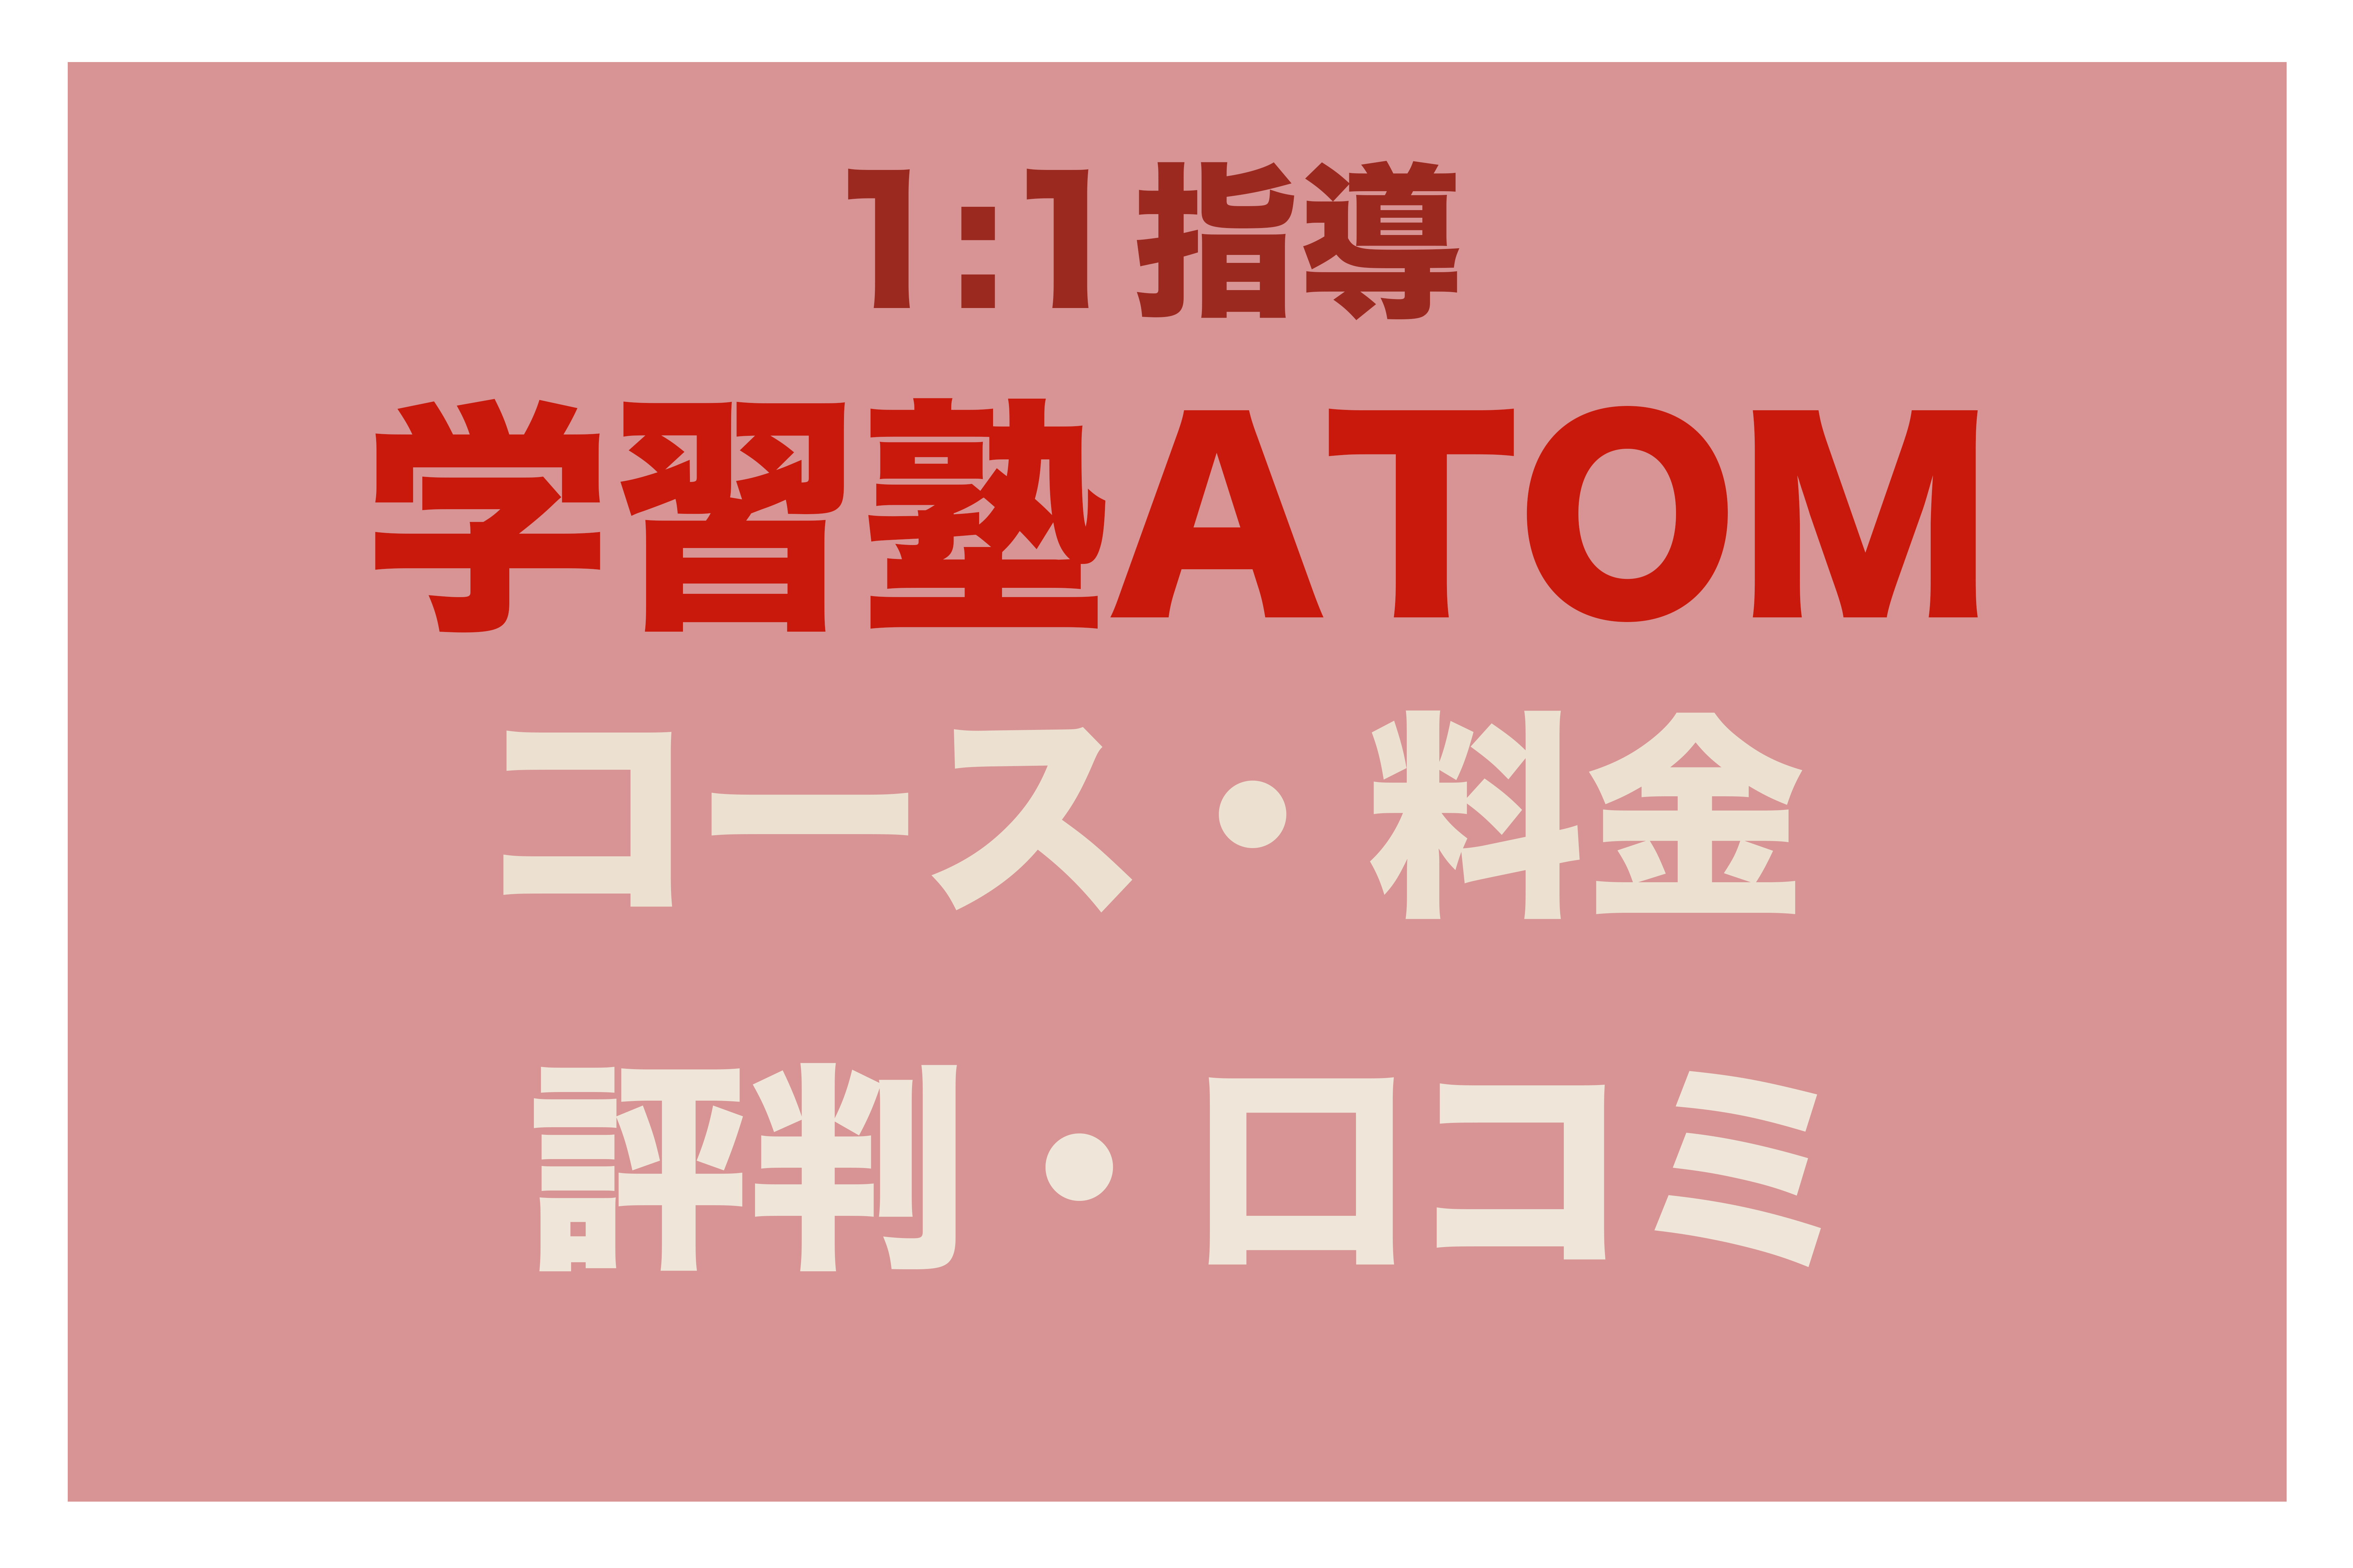 Atomtop